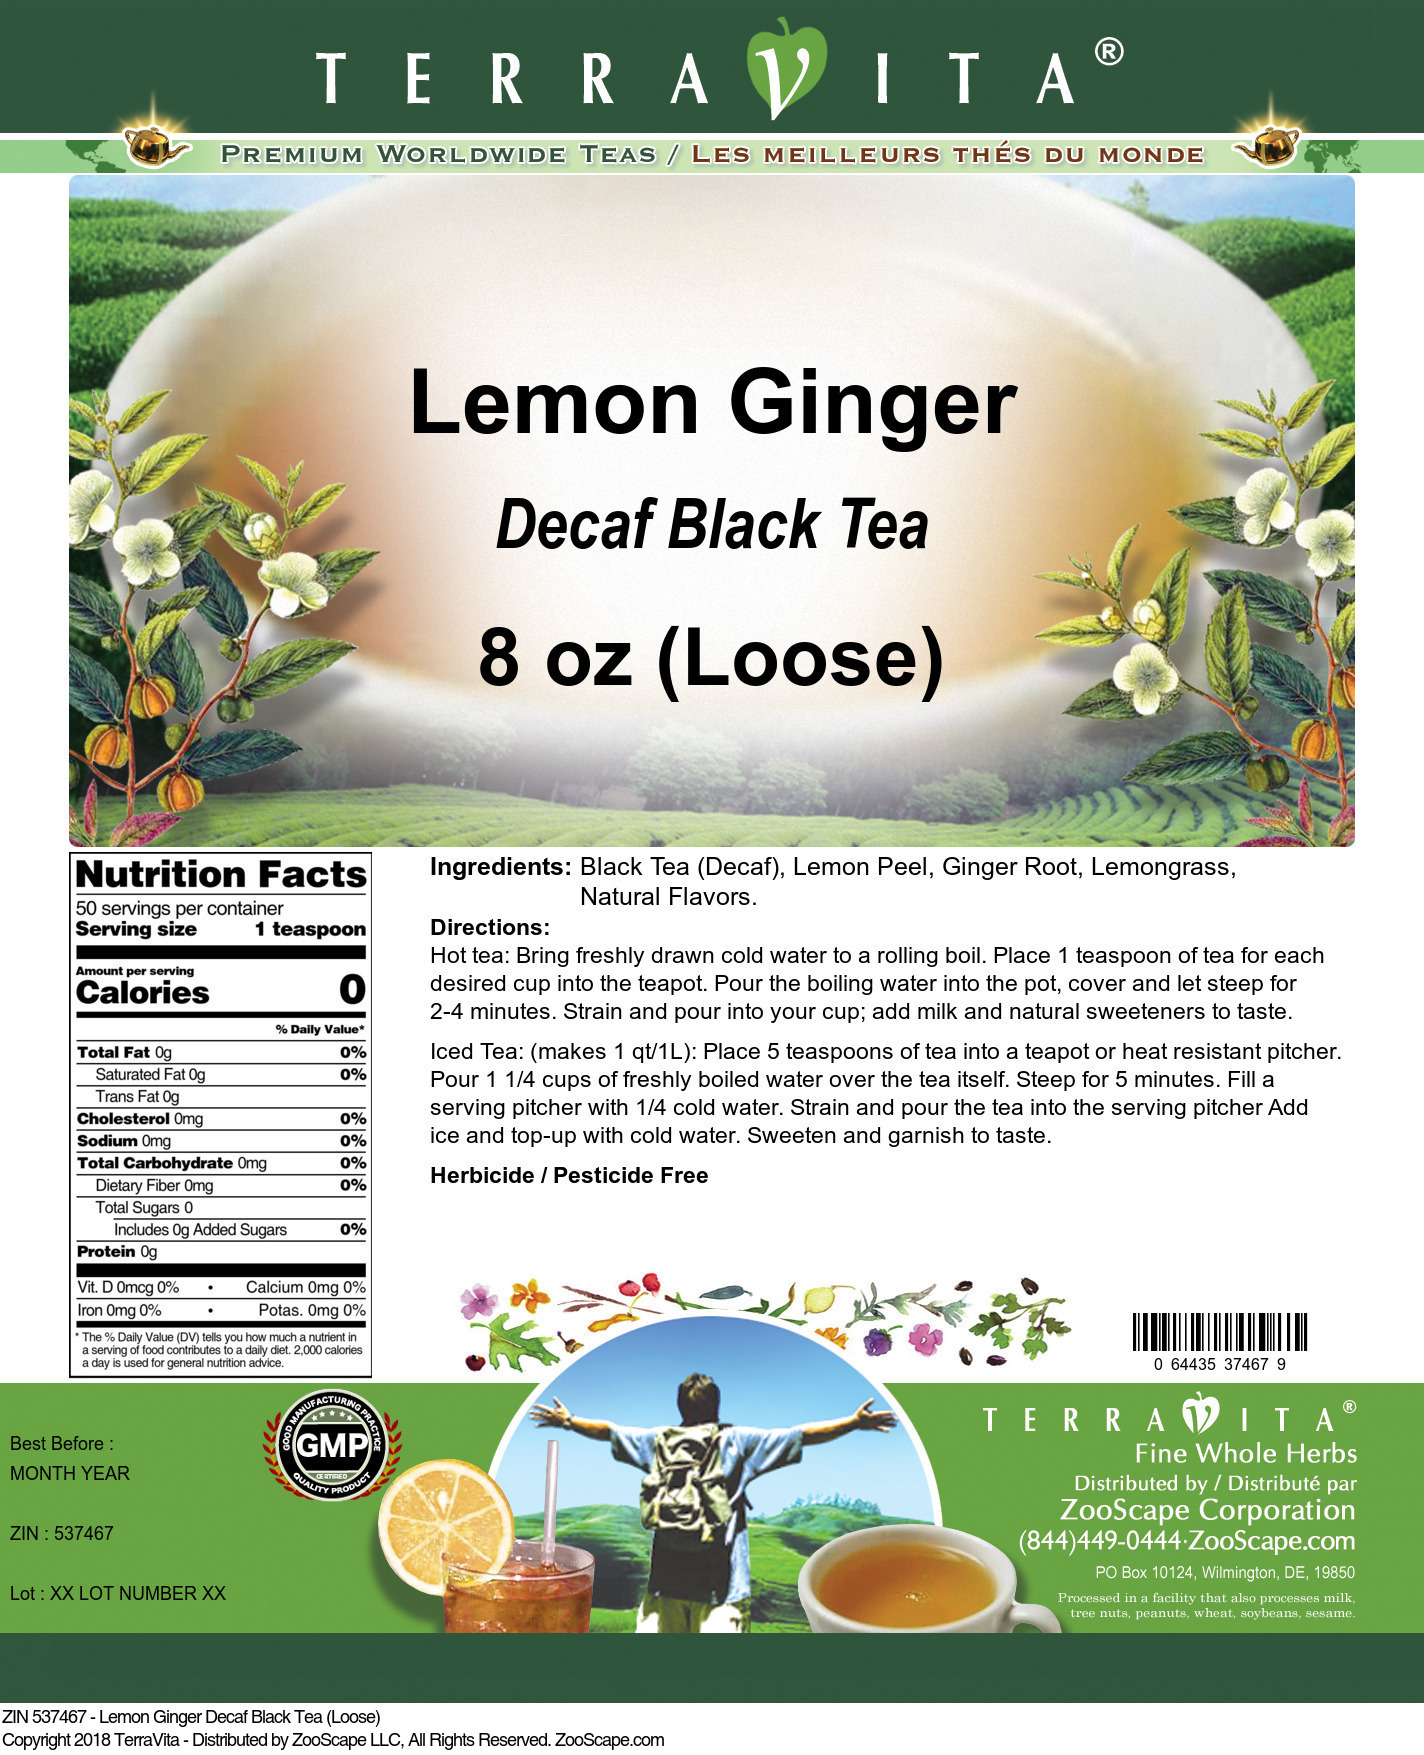 Lemon Ginger Decaf Black Tea (Loose) - Label